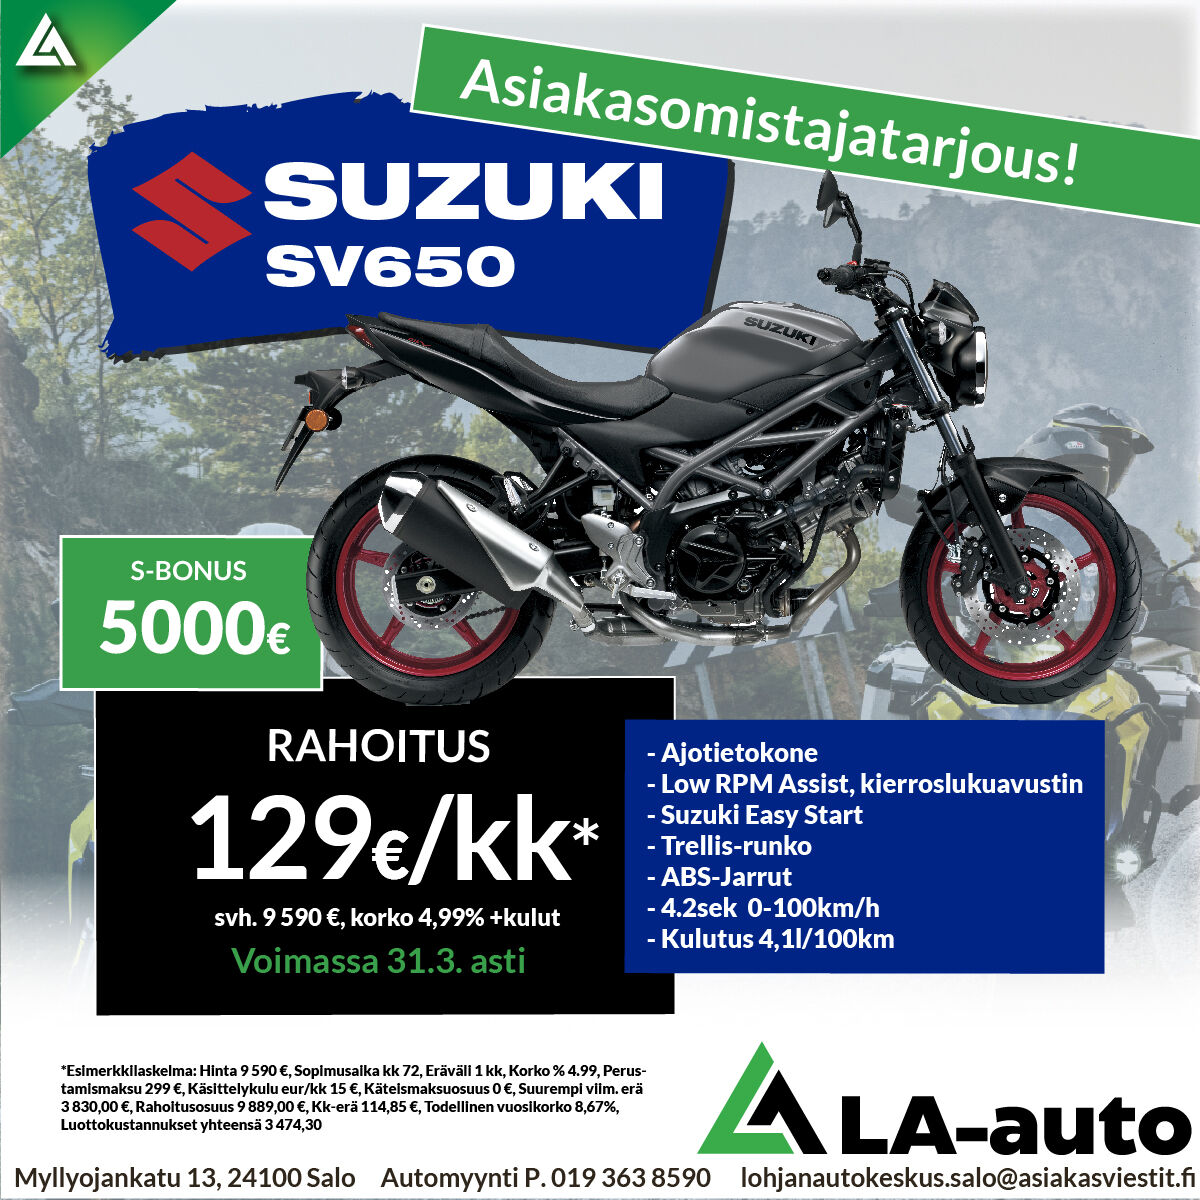 Asiakasomistajatarjous: Suzuki SV650, Rahoitus 129€/kk